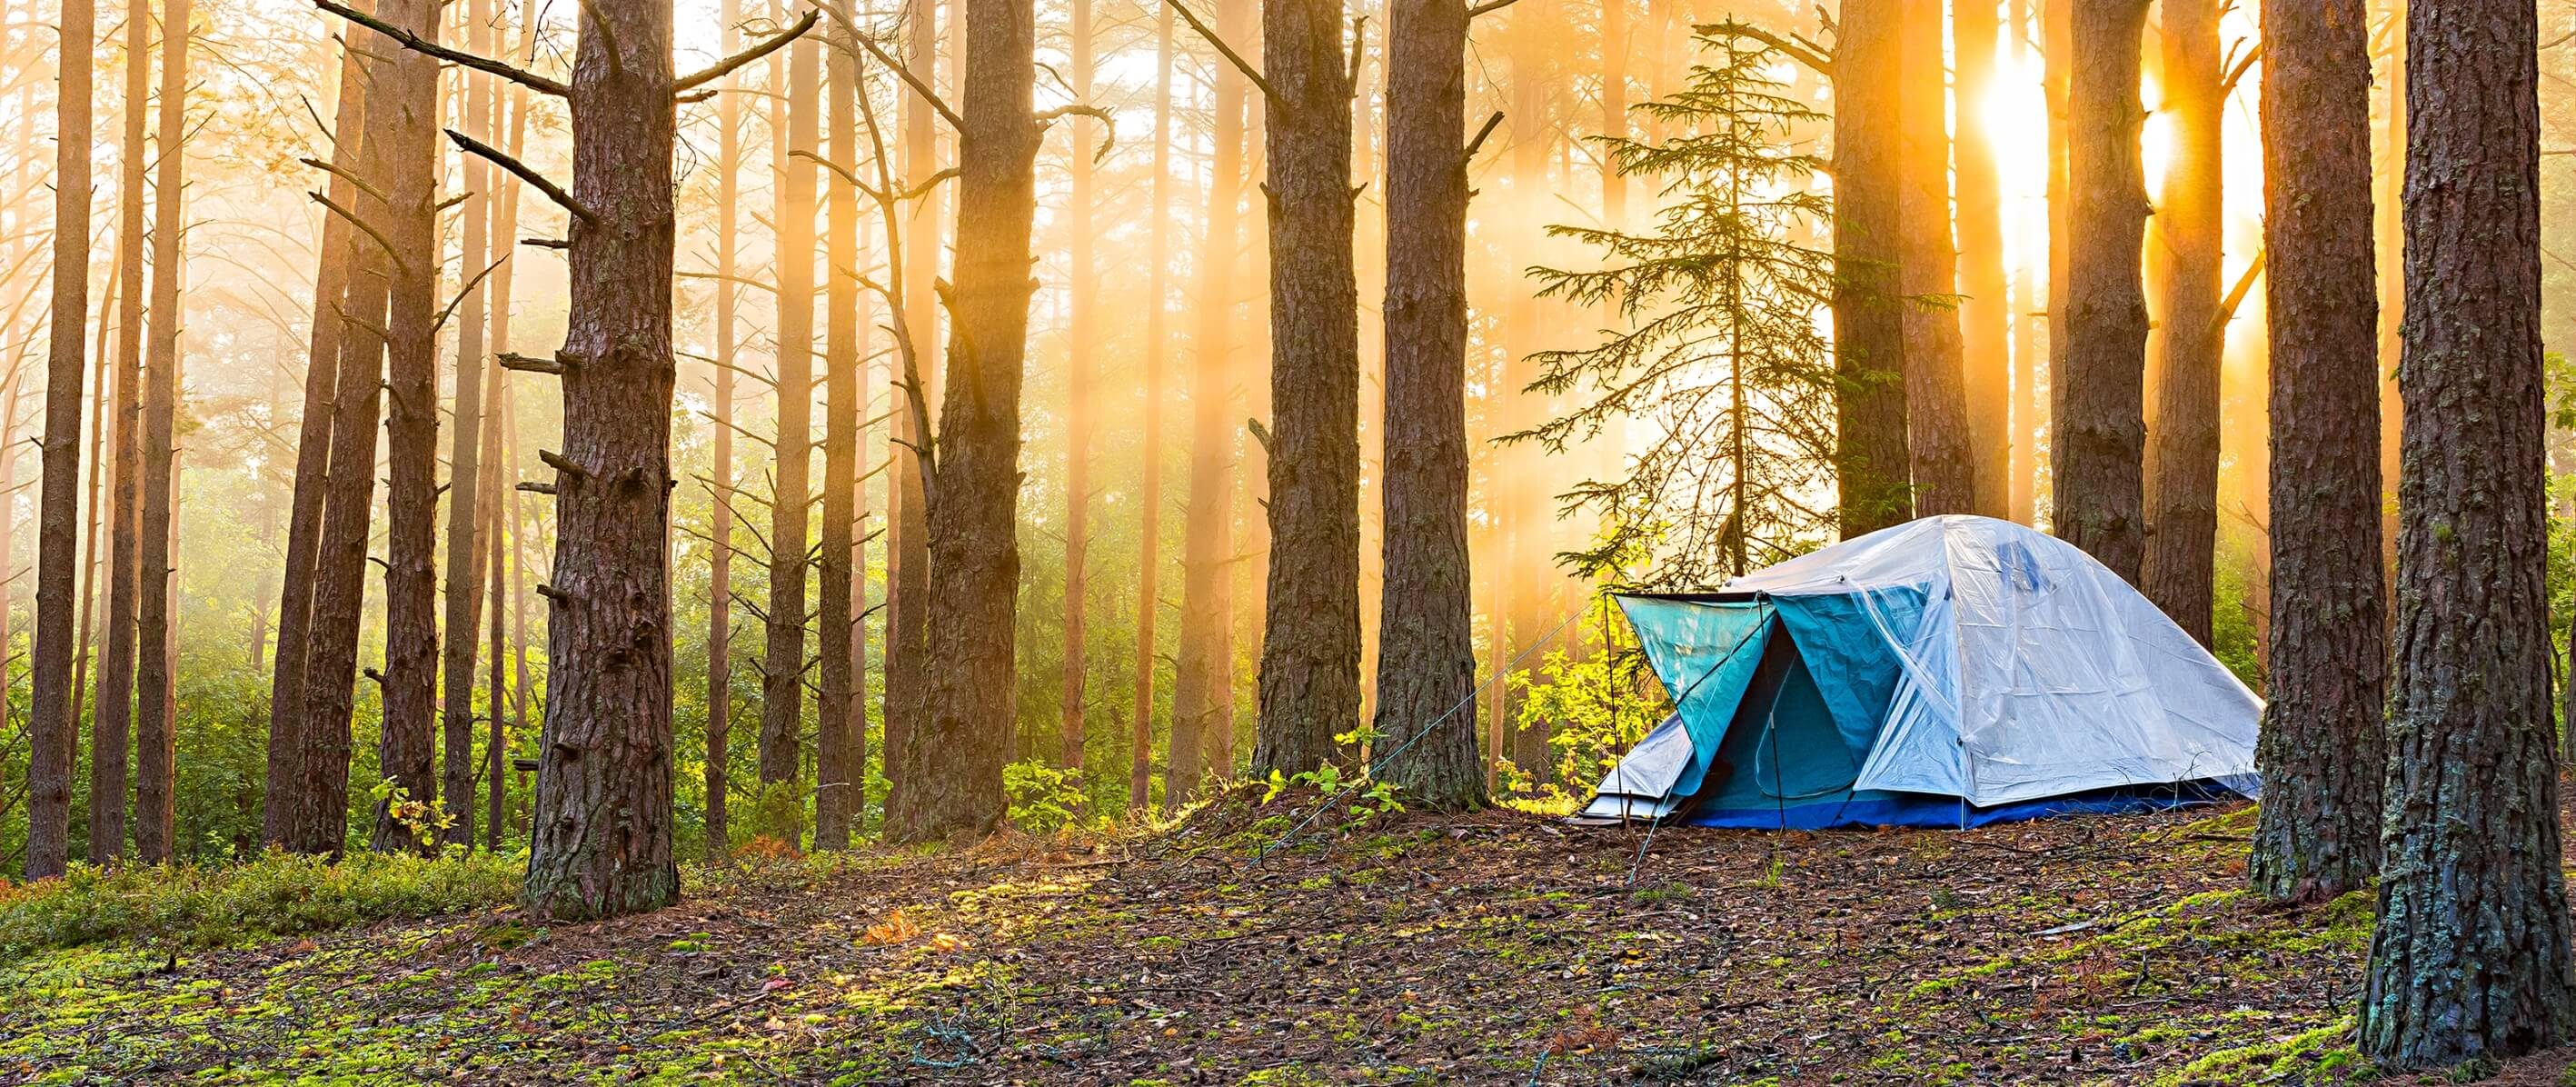 Accessori per il campeggio: quali i preferiti?